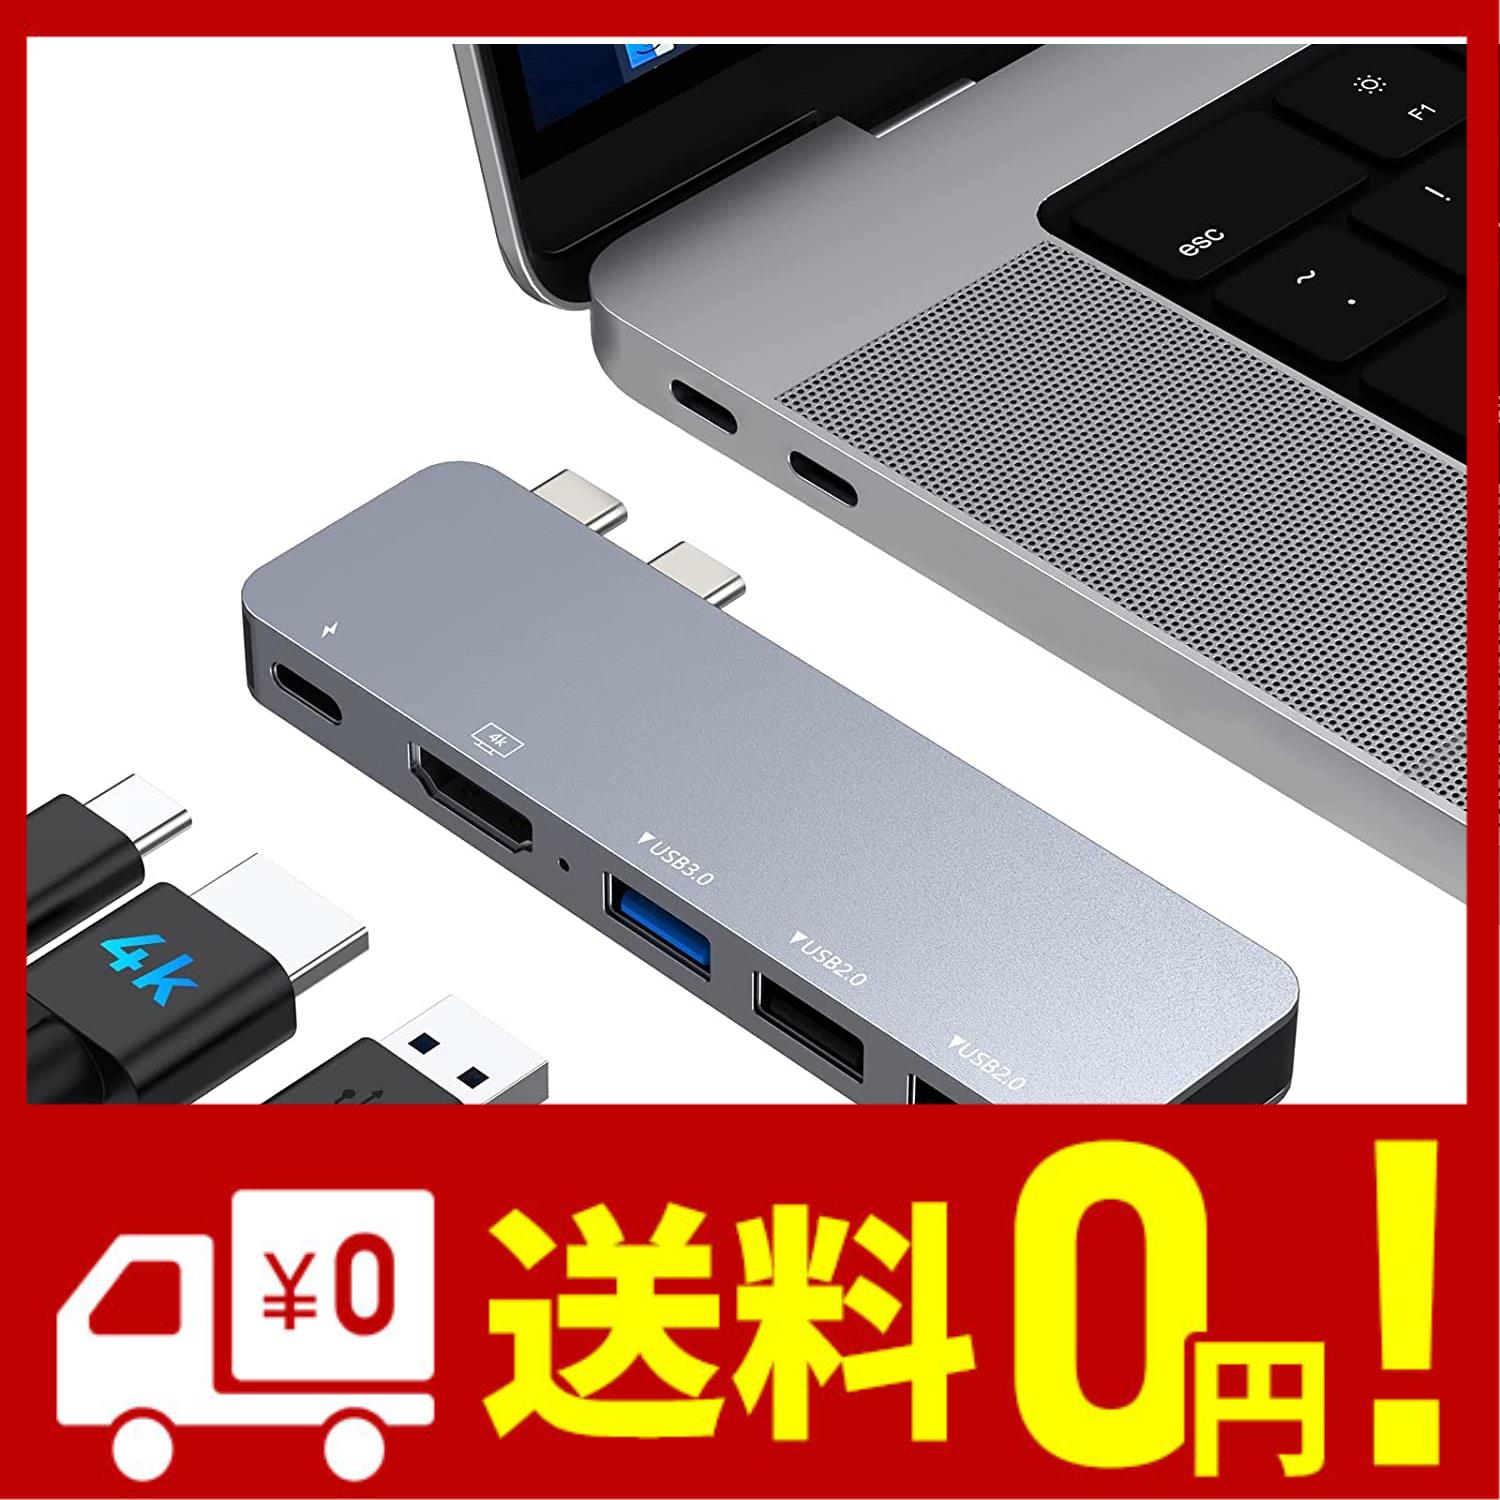 GIISSMO MacBook ハブ 5in2 Mccbook Air ハブ Macbook Pro ハブ USB Type C ハブ Macbook USB 変換 アダプター 4K HDMI MacBook Pro Air